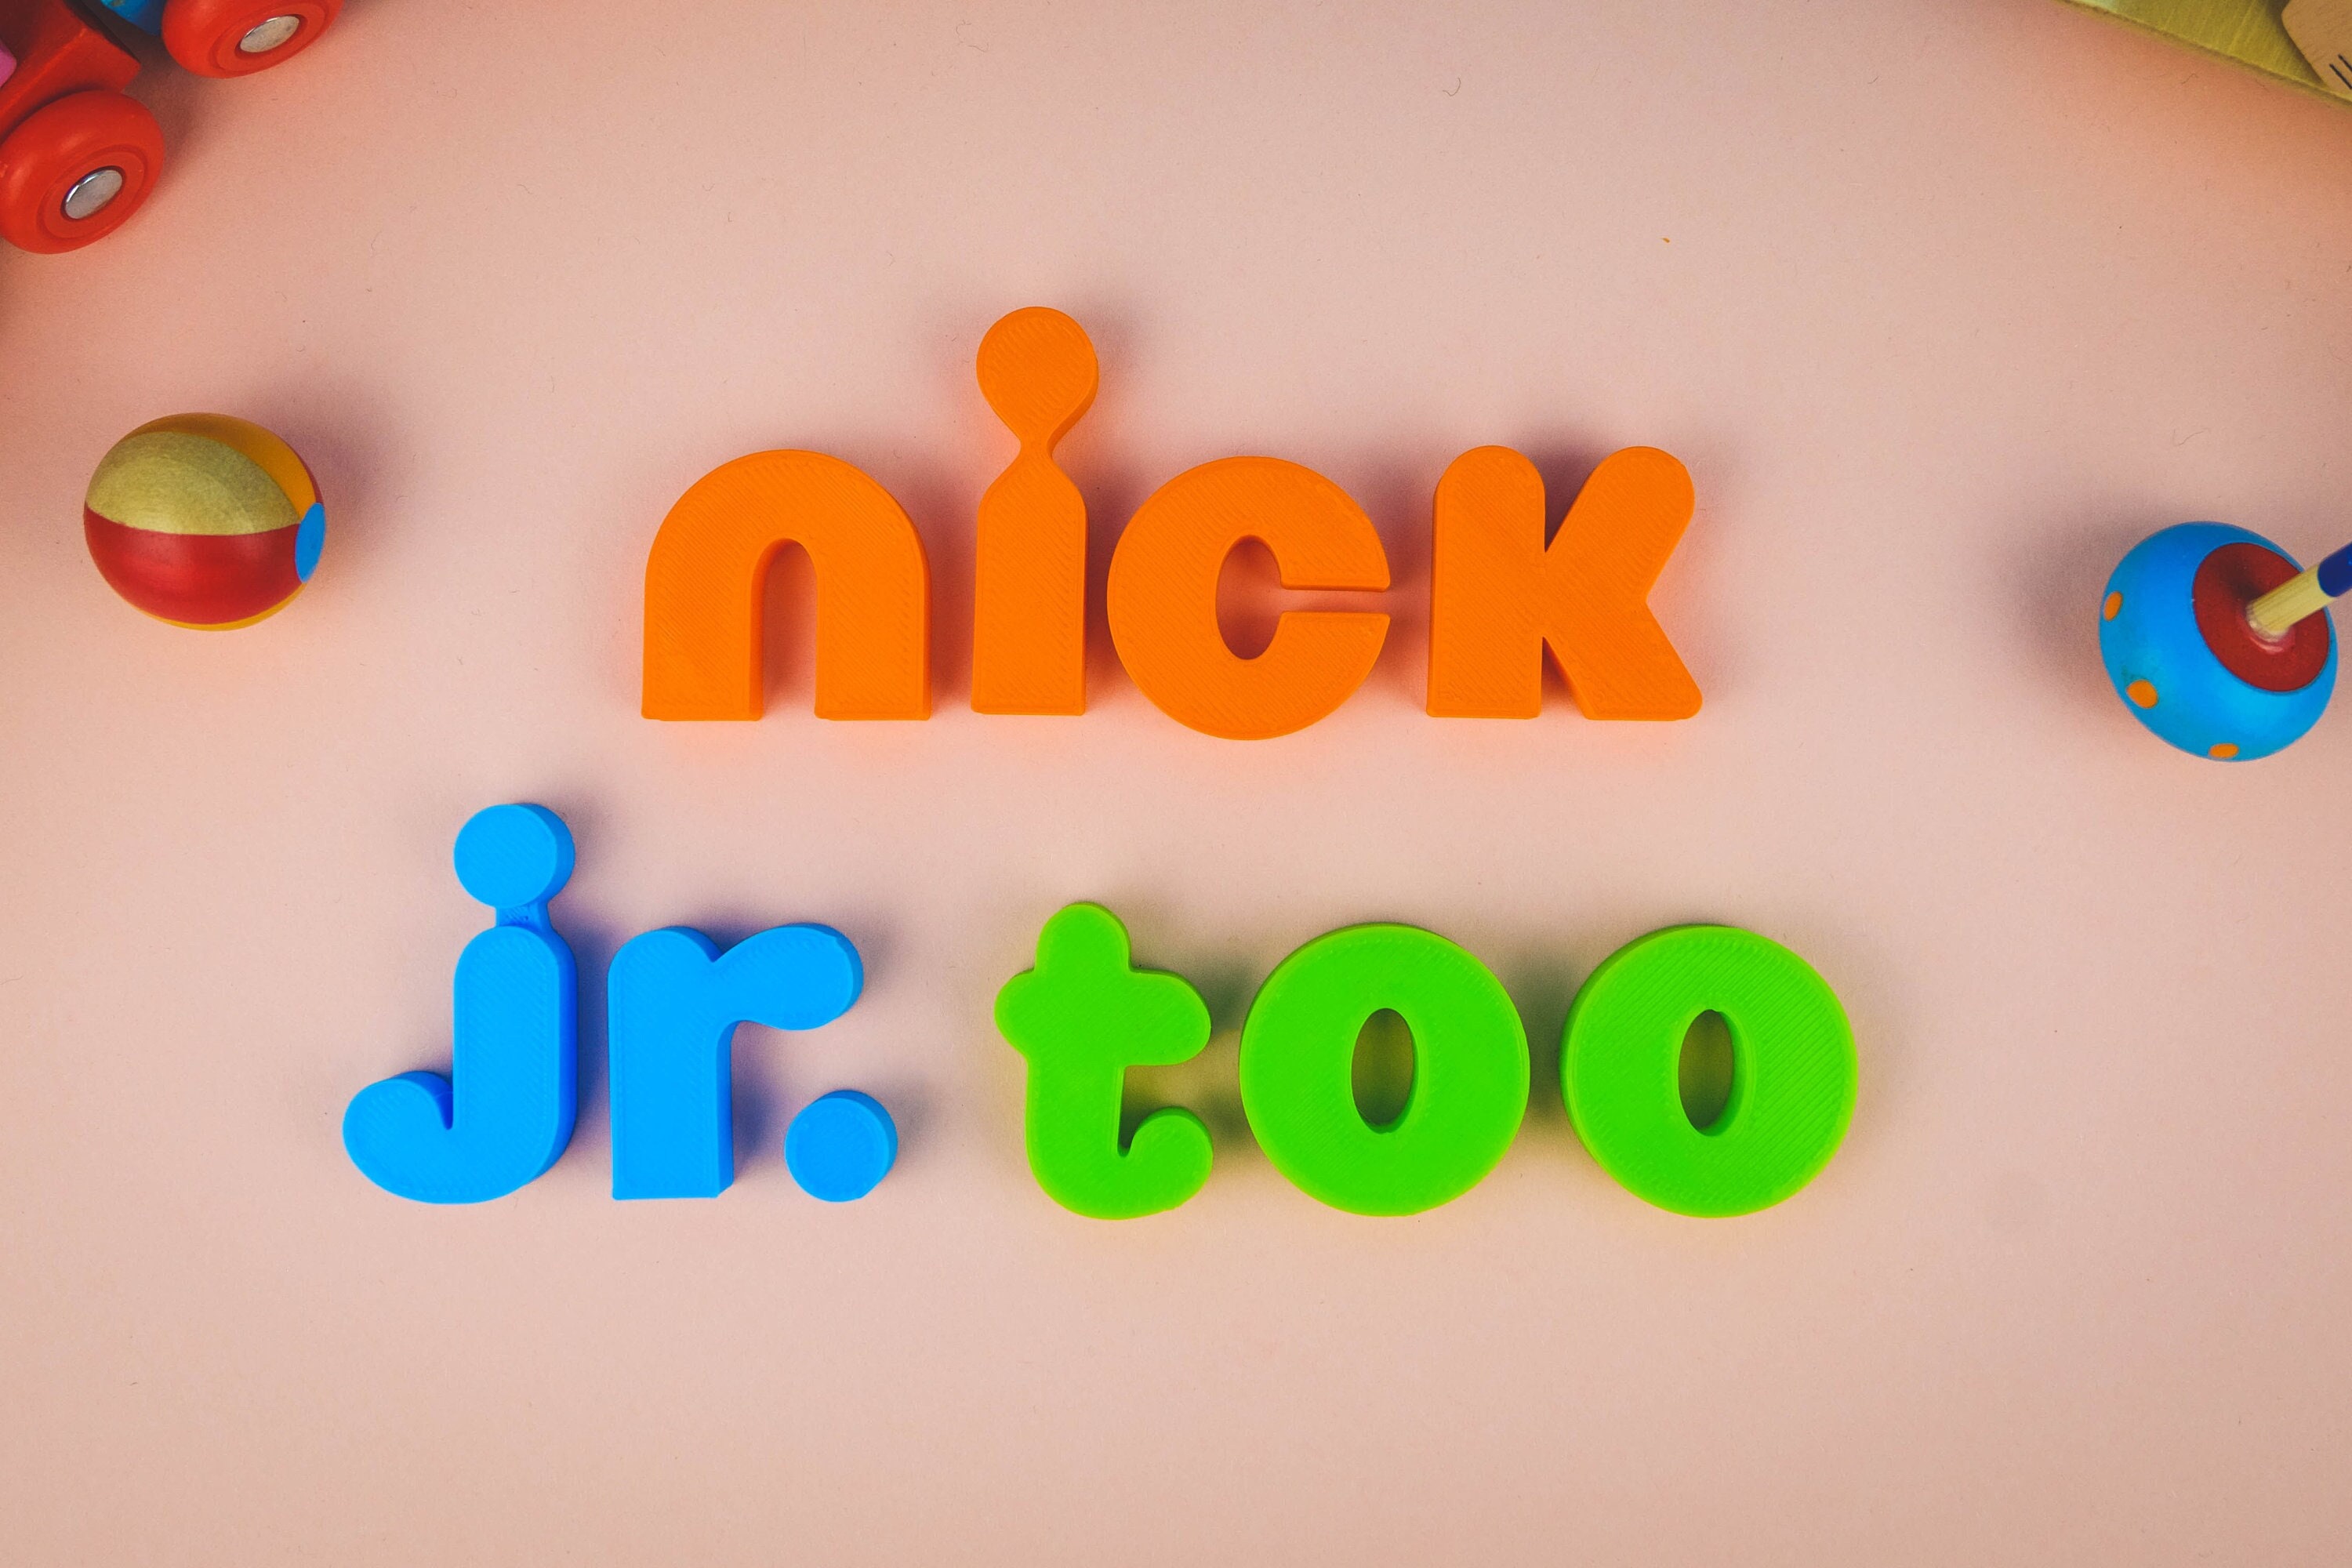 Nick Jr. 